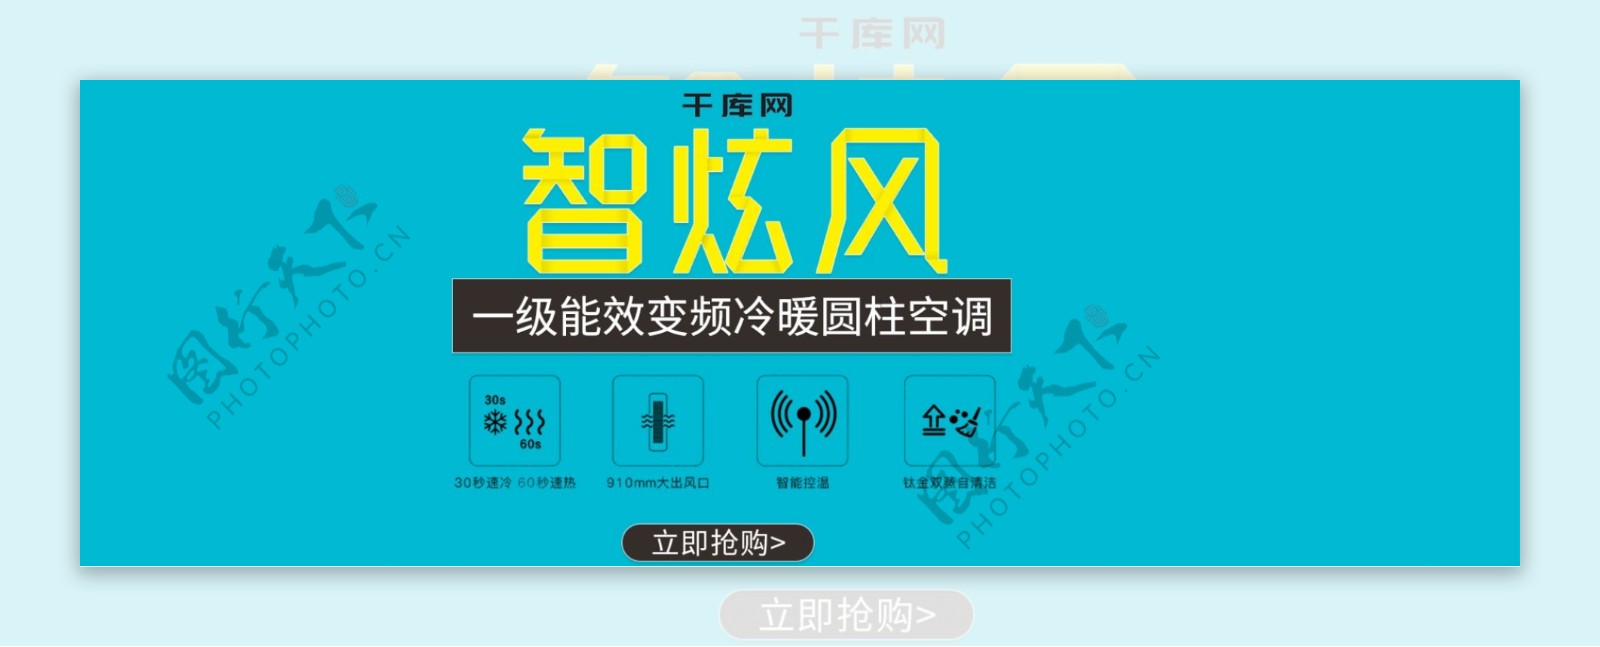 电商淘宝天猫智炫风空调促销banner图